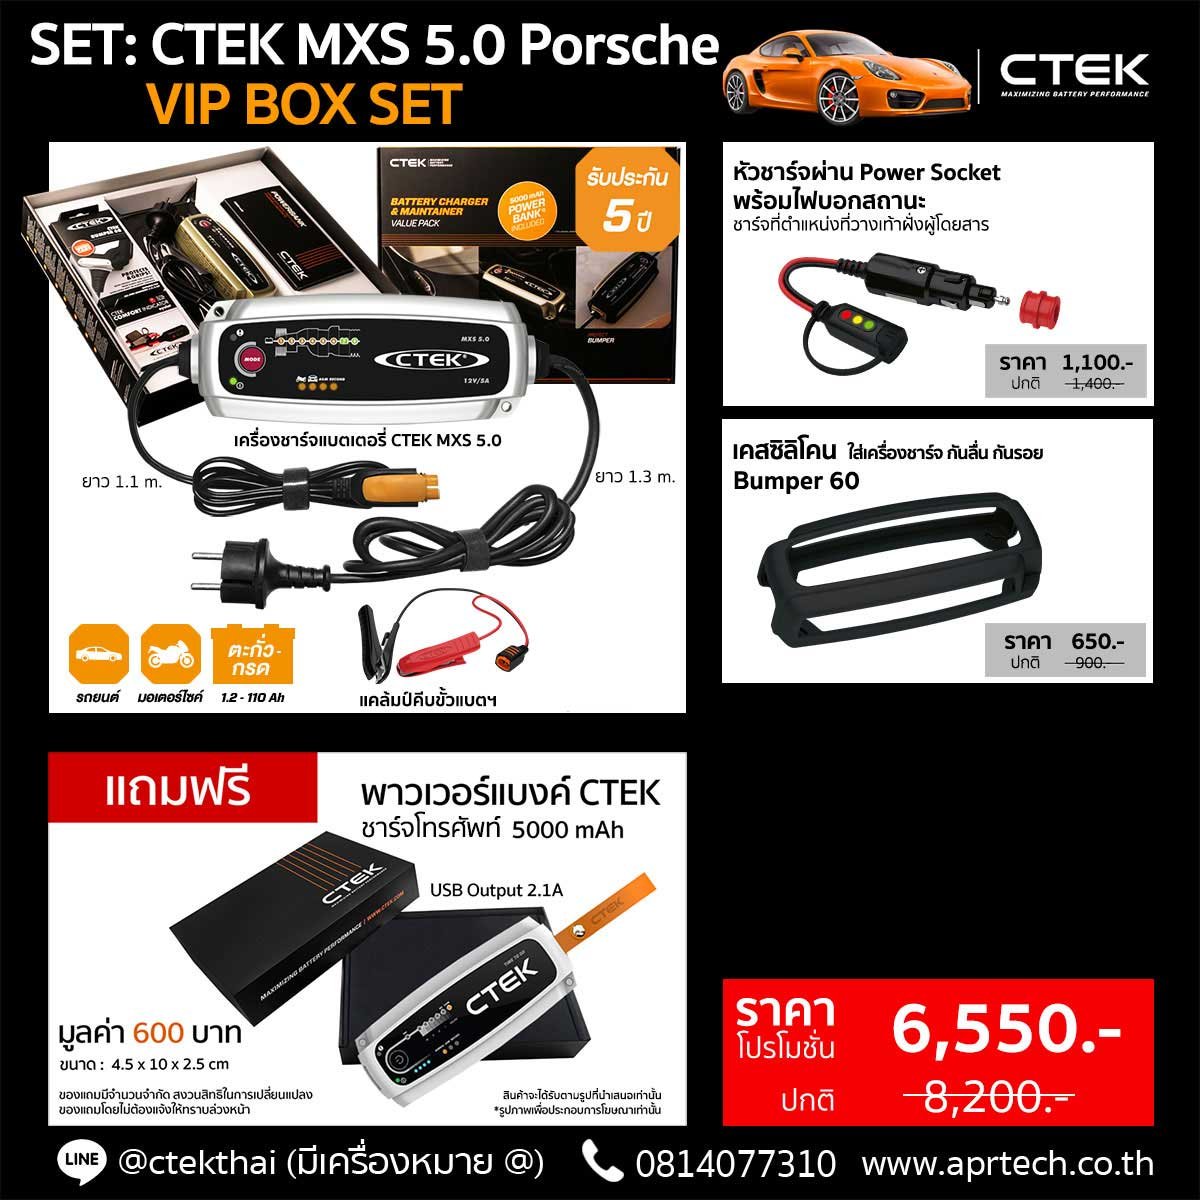 SET CTEK MXS 5.0 Porsche VIP BOX SET (CTEK MXS 5.0 + Cig Plug + Bumper)